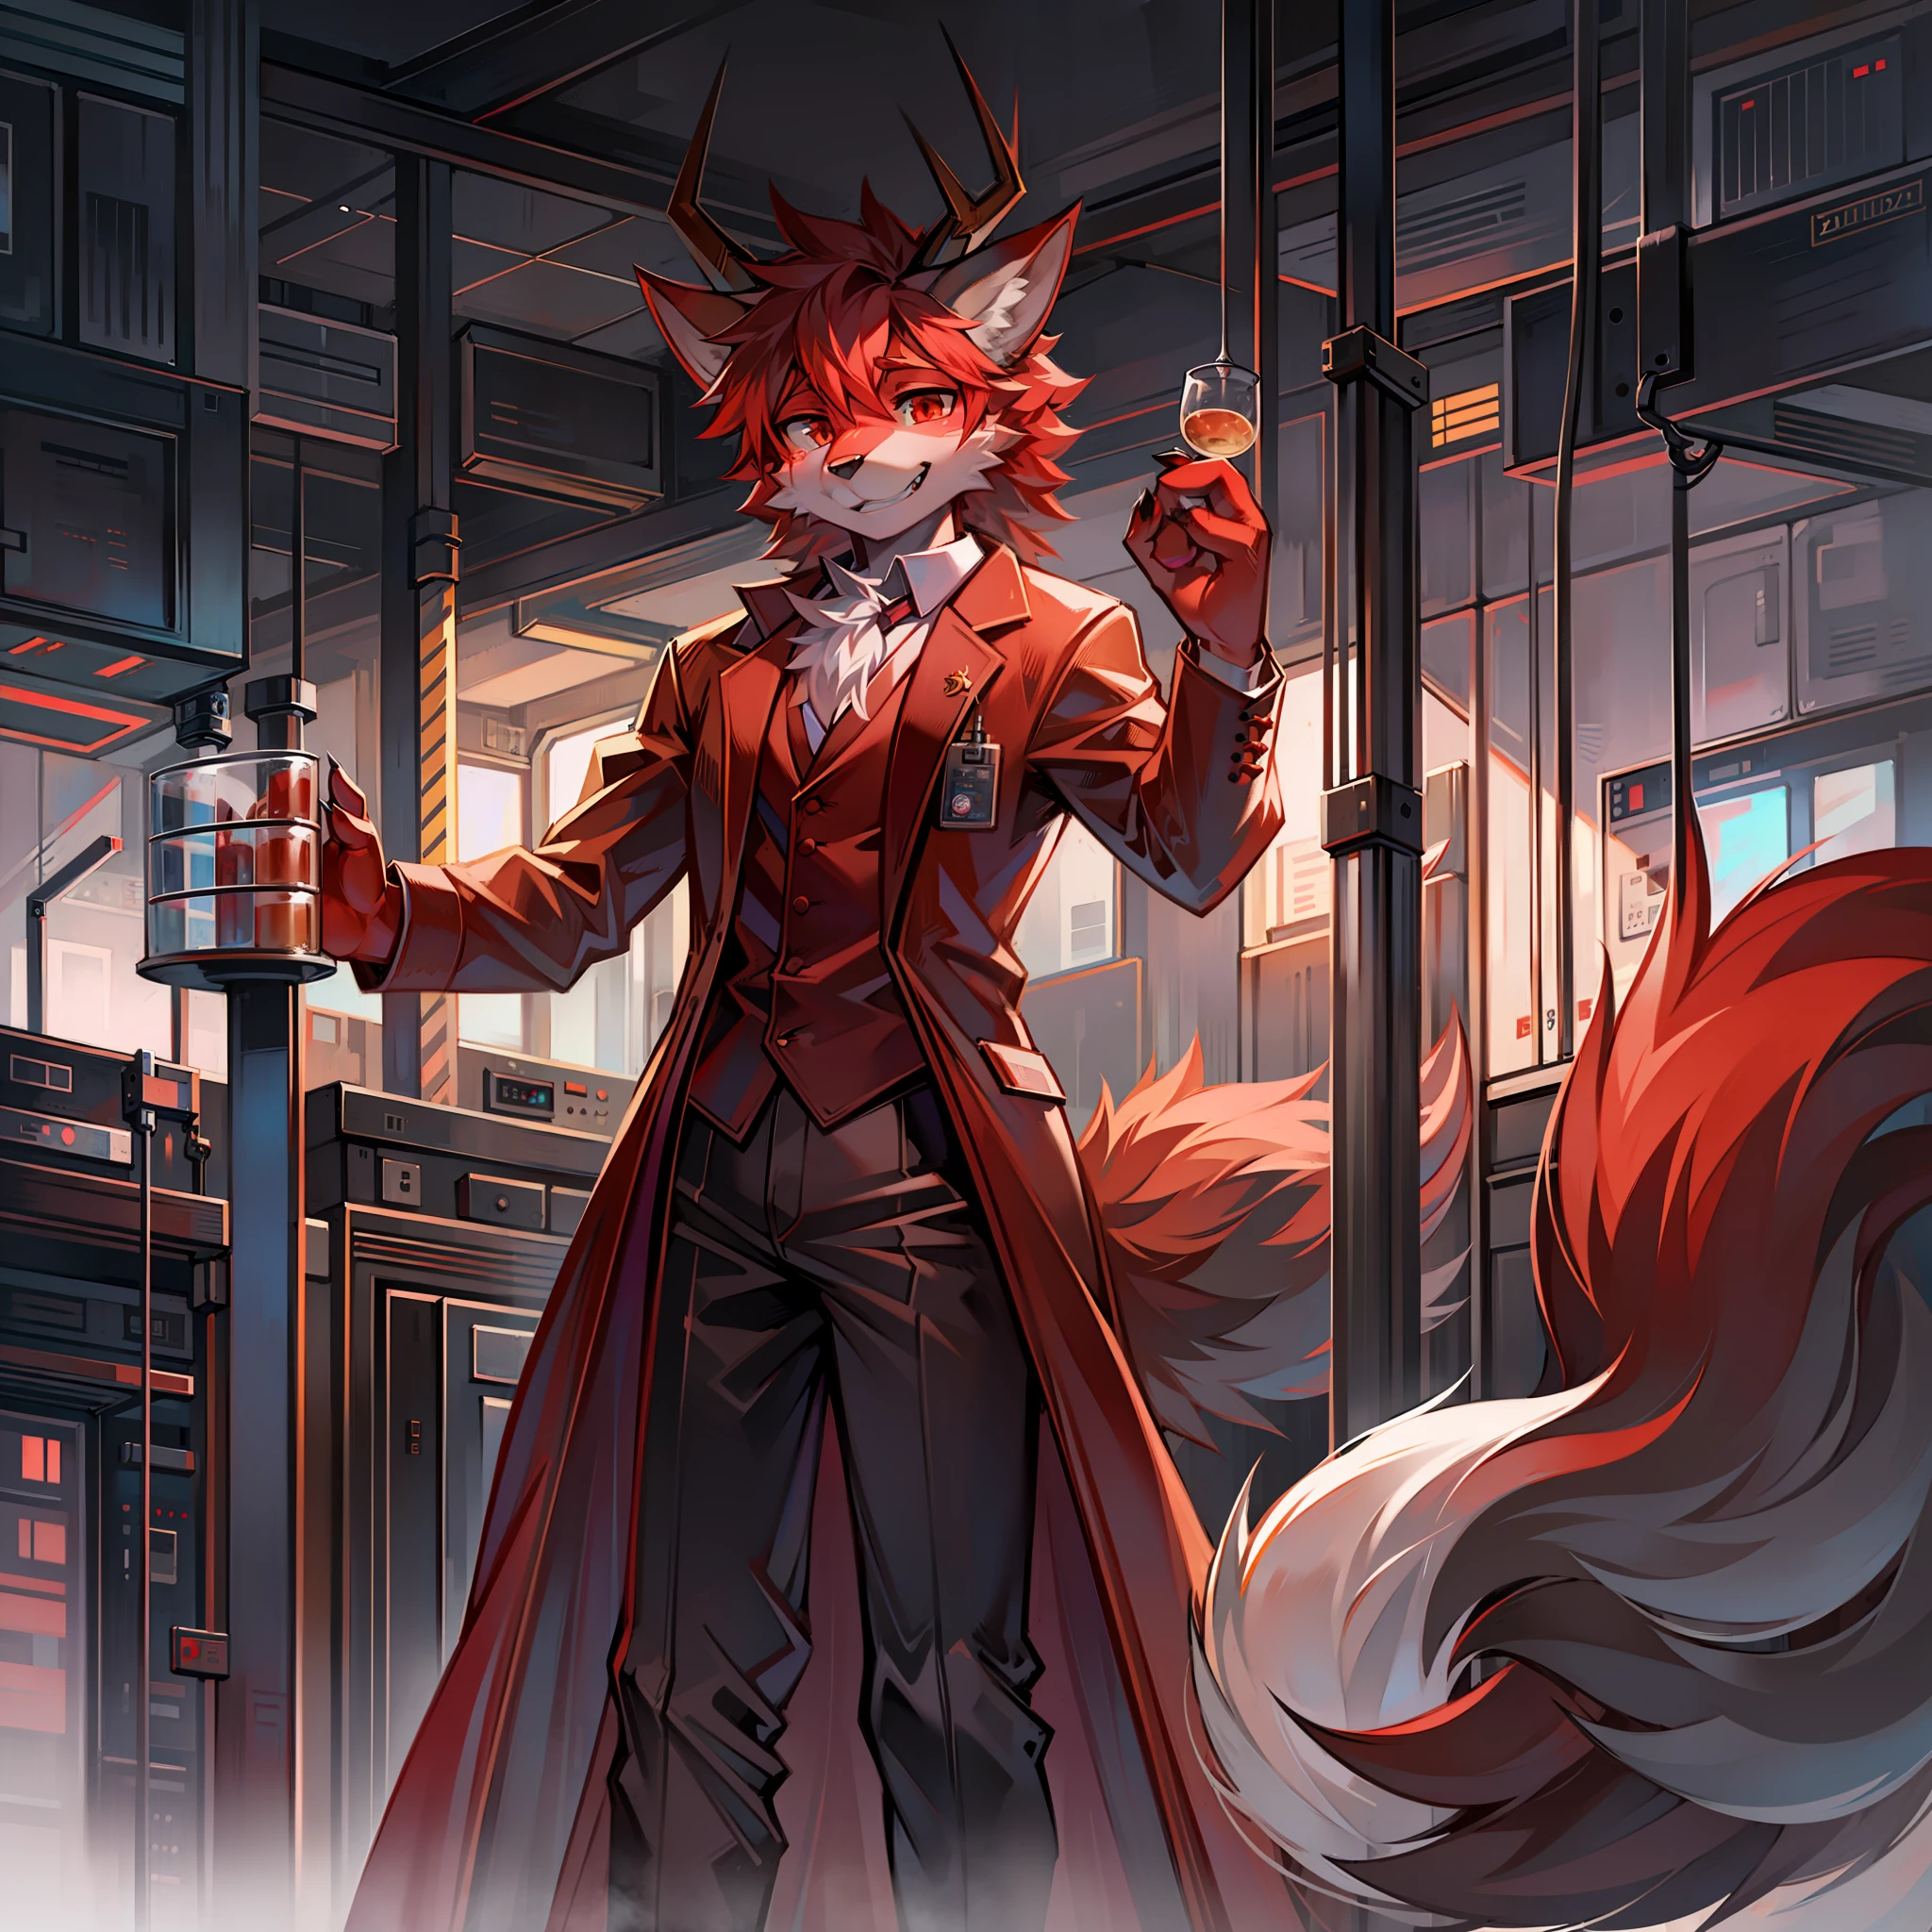 4개의 용 뿔을 가진 실험실의 과학자 복장을 한 털복숭이 붉은 늑대.